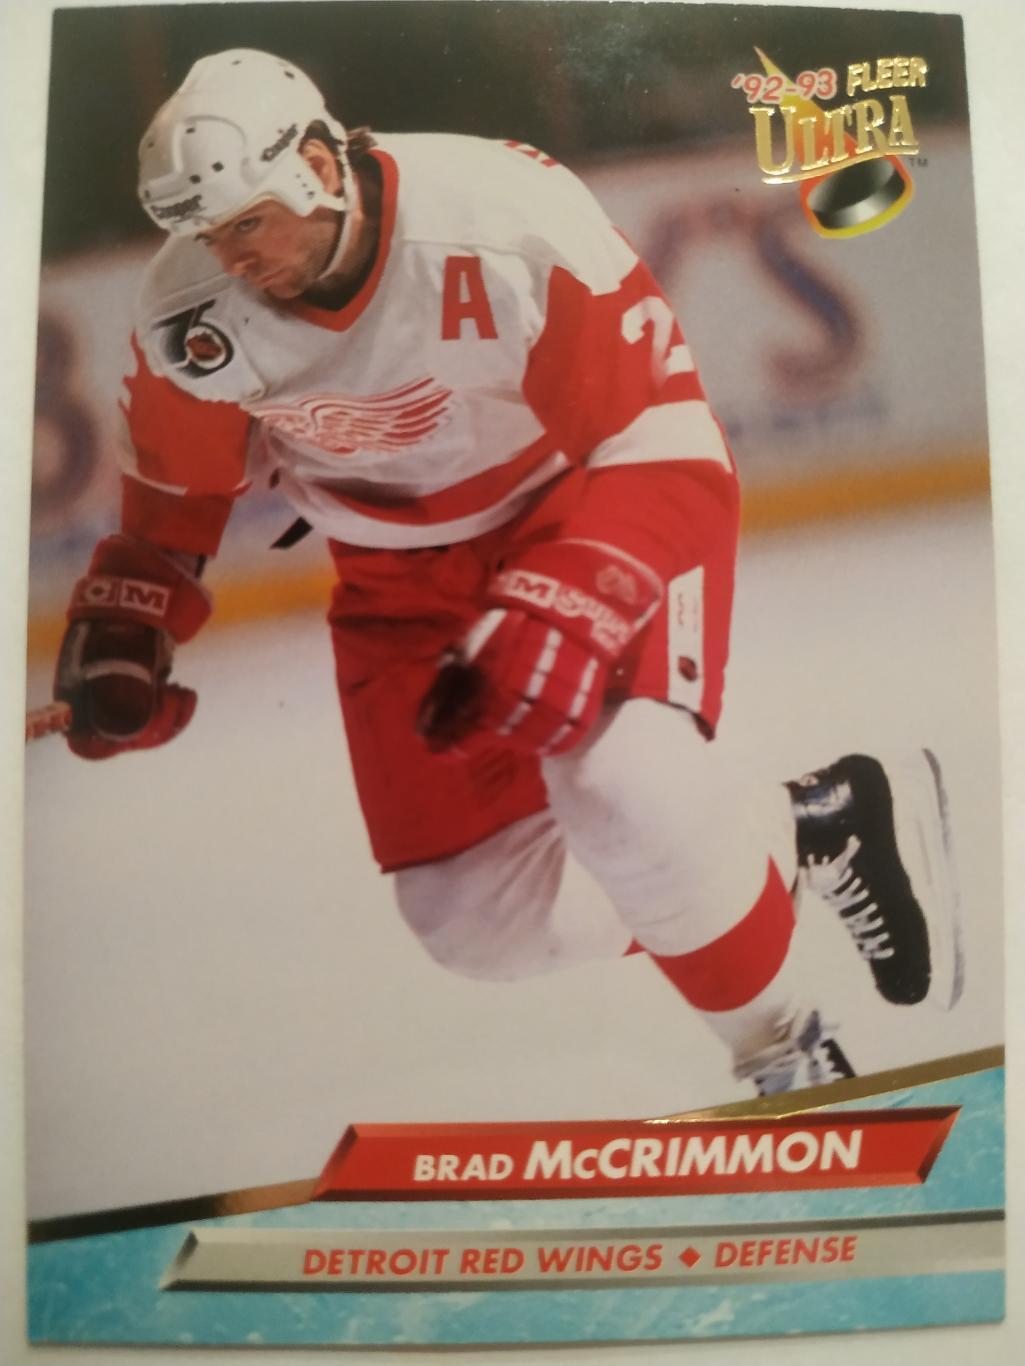 ХОККЕЙ КАРТОЧКА НХЛ FLEER ULTRA 1992-93 NHL BRAD MCCRIMMON DETROIT RED WINGS #52